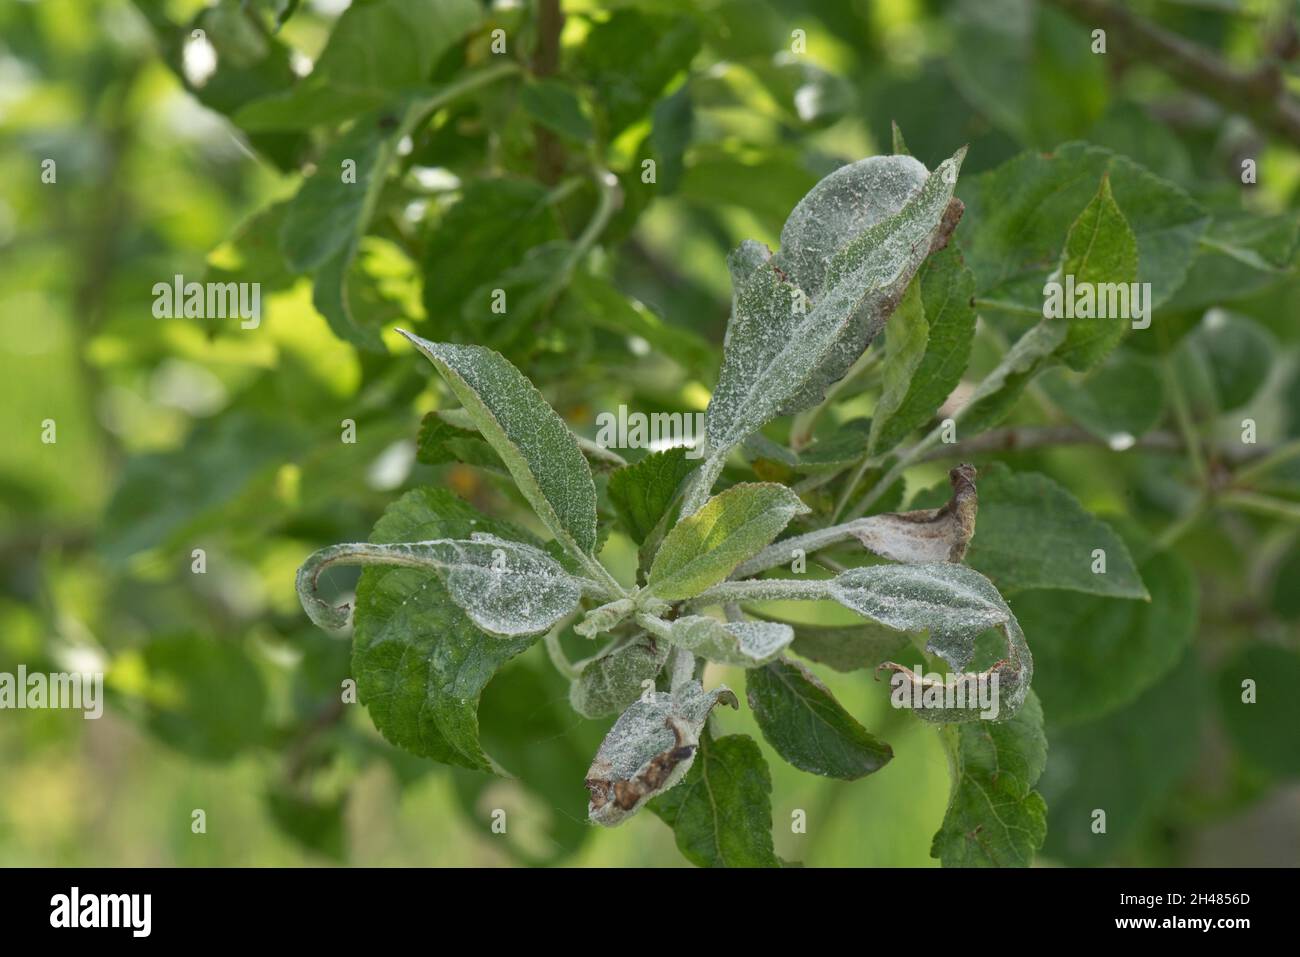 Premier mildiou poudreux ( Podosphaera leucotricha) mycélium blanc et spores sur la croissance de nouveaux pommiers, Berkshire, juin Banque D'Images